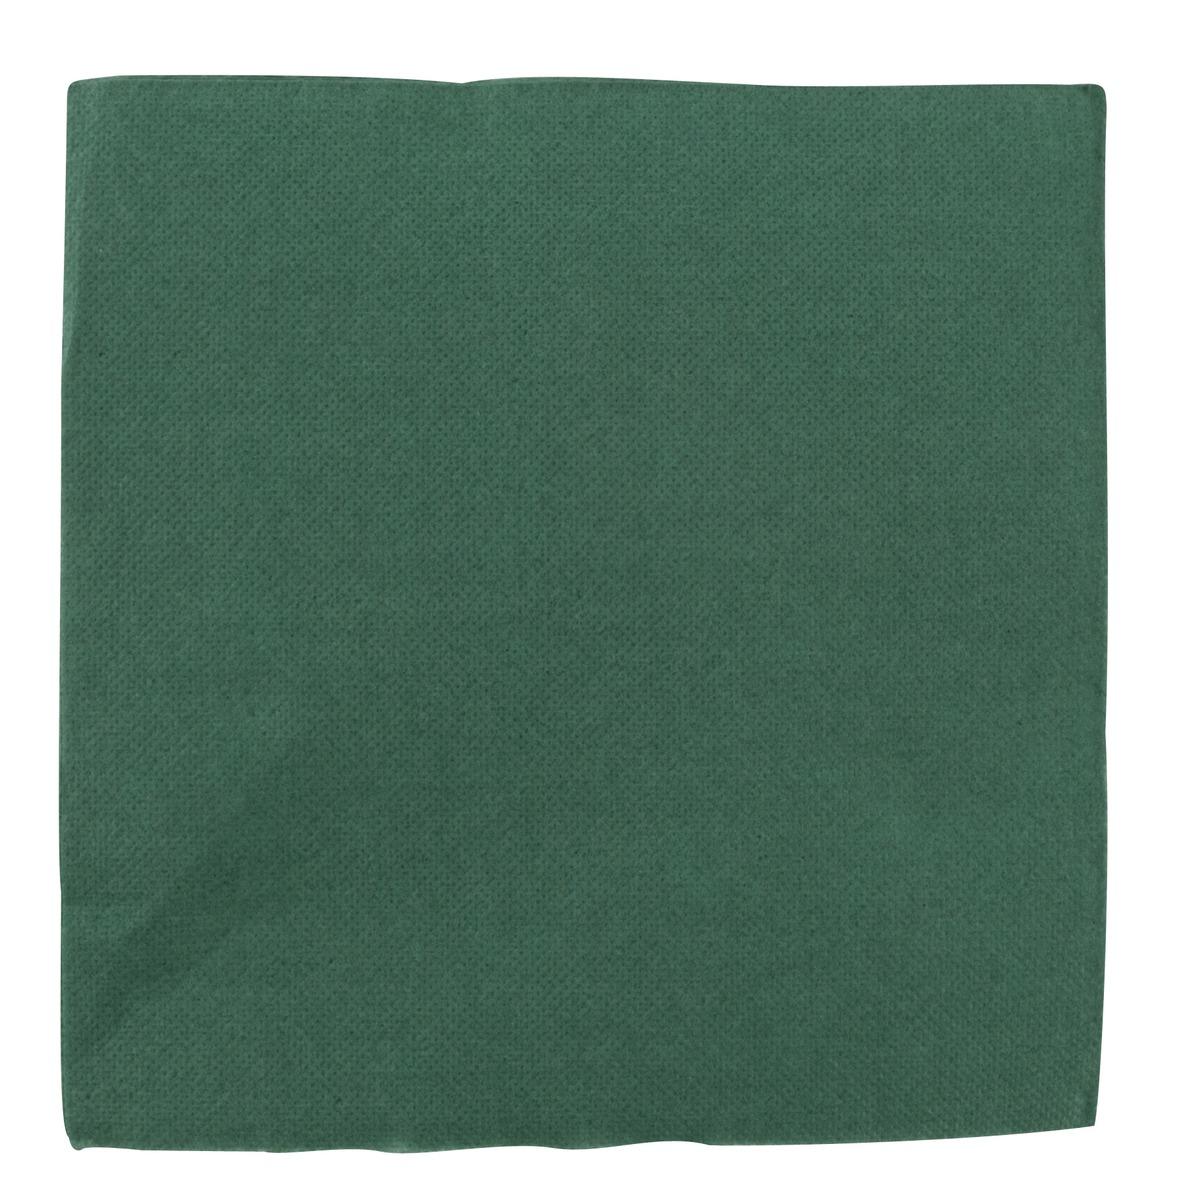 Lot de 40 serviettes en papier - 38 x 38 cm - Vert sapin